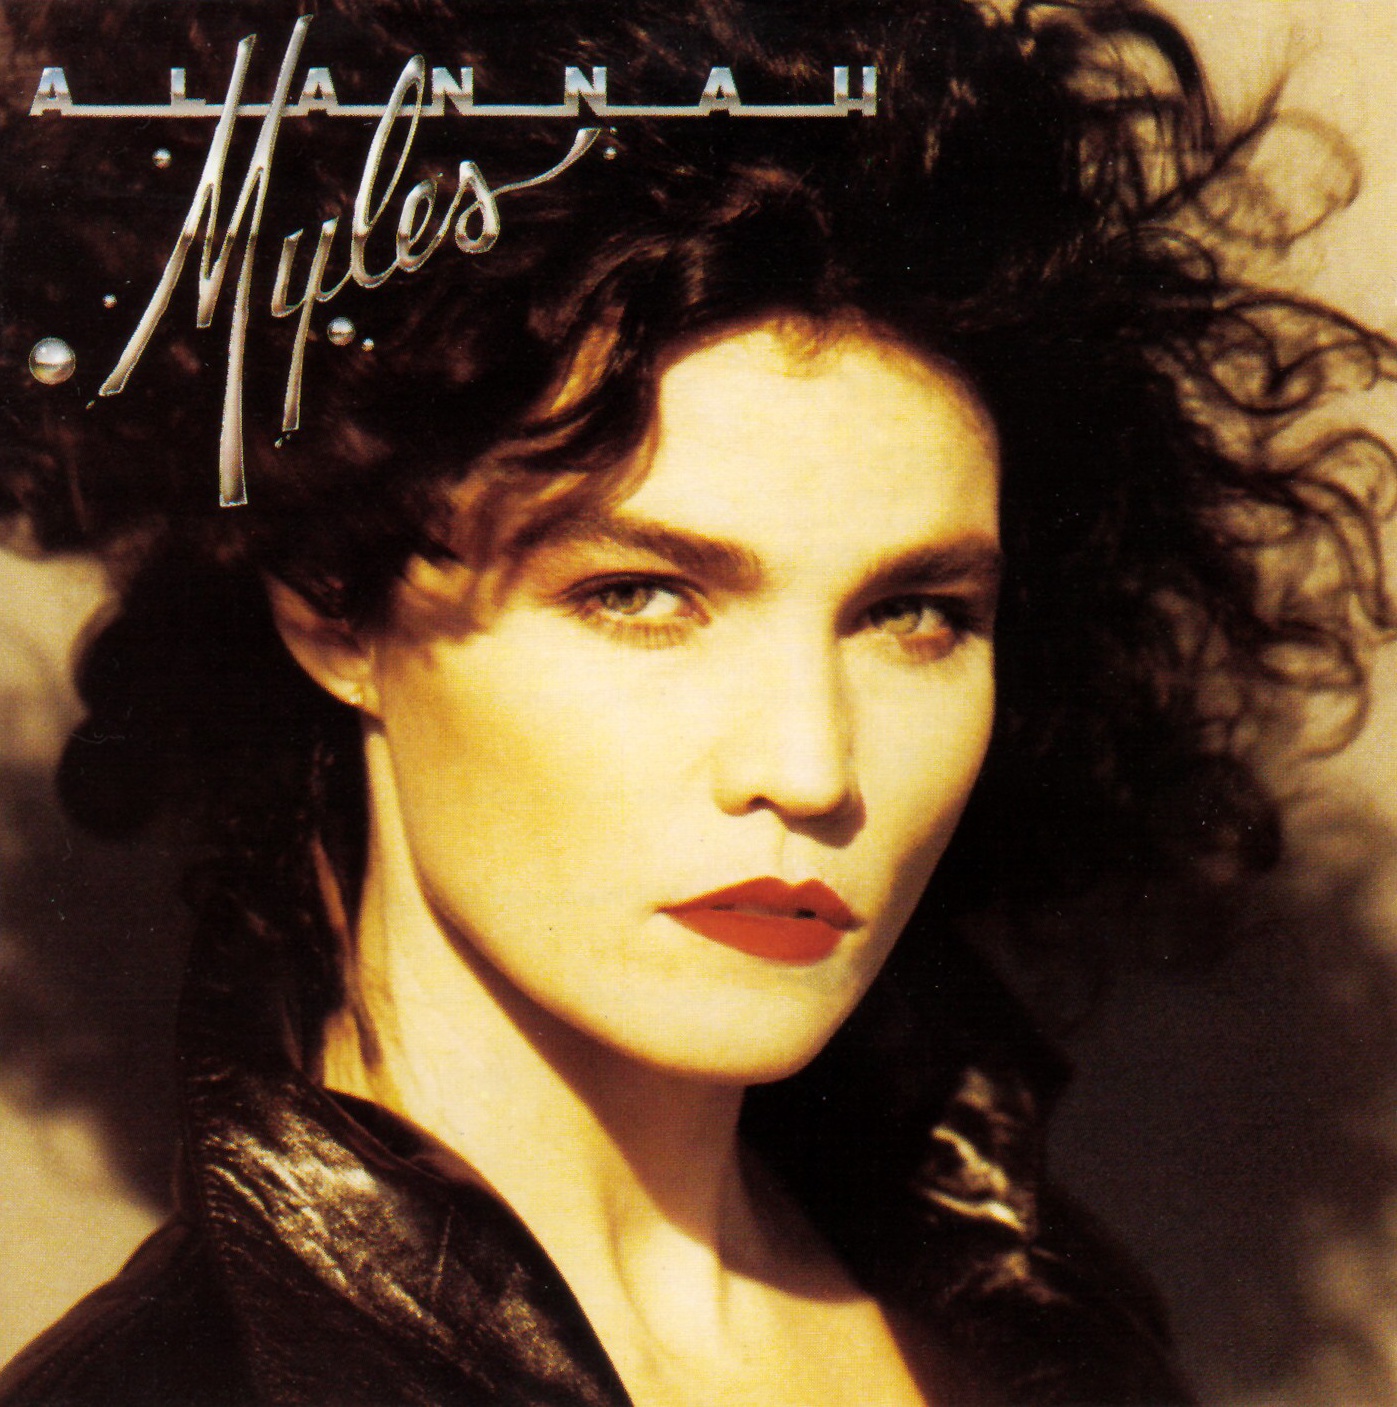 Alannah Myles - Alannah Myles 1989, Hard Rock, AOR, Pop Rock, Canada. 